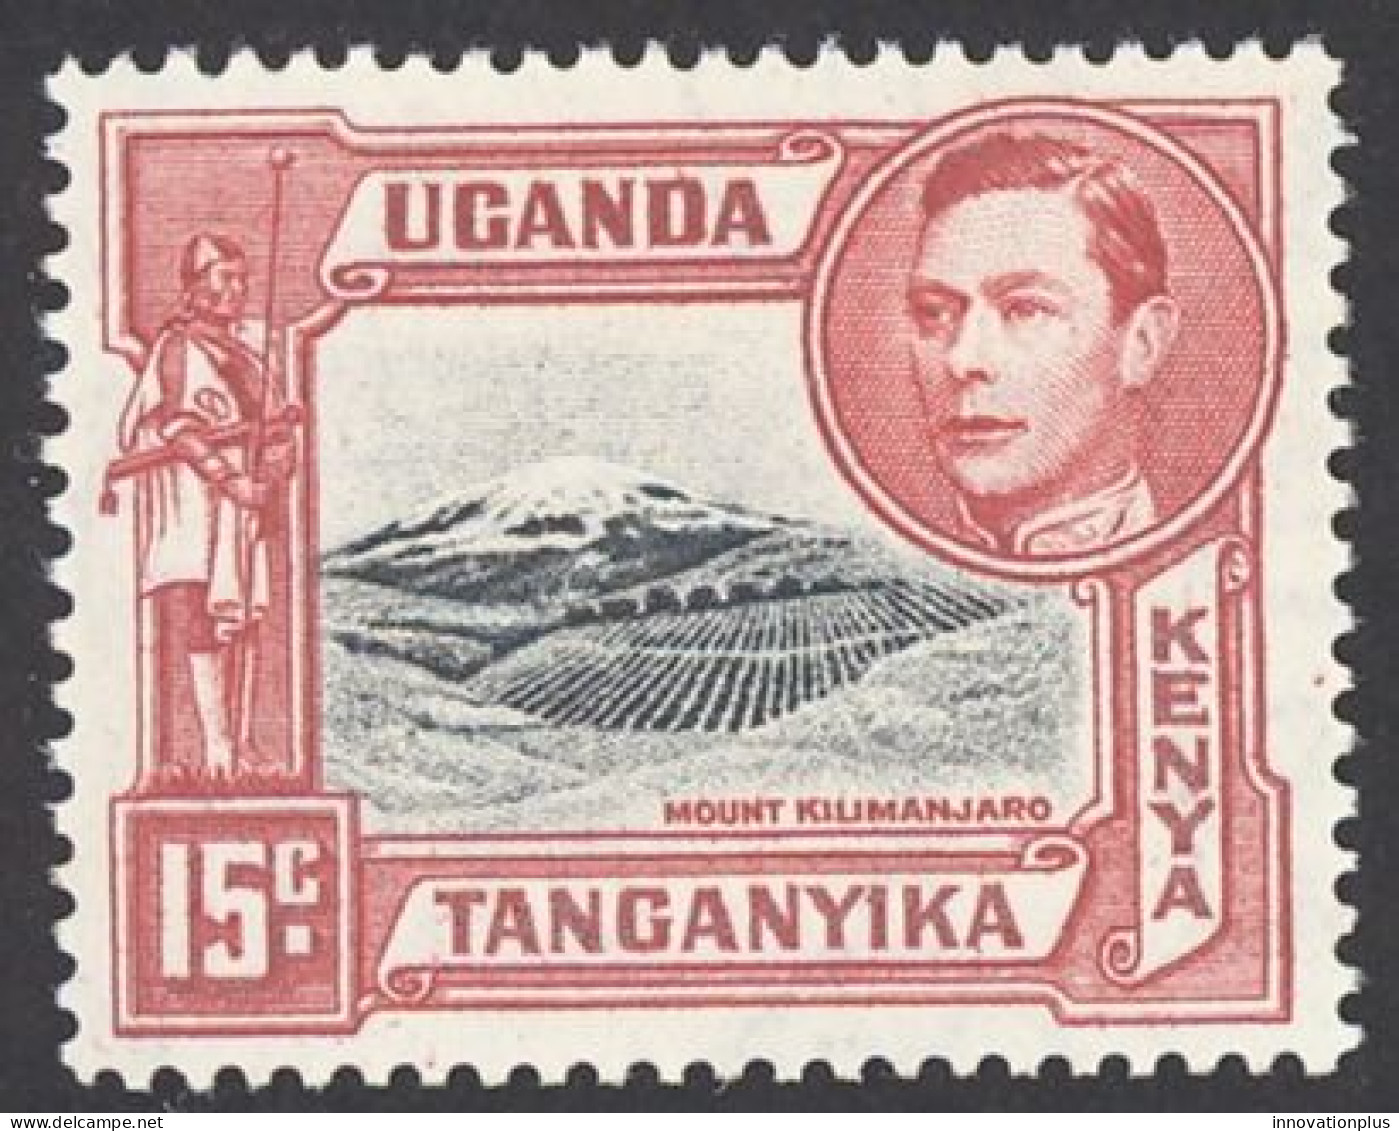 Kenya, Uganda, Tanzania Sc# 72 MNH 1943 15c Carmine & Gray Black Definitives - Kenya, Uganda & Tanzania